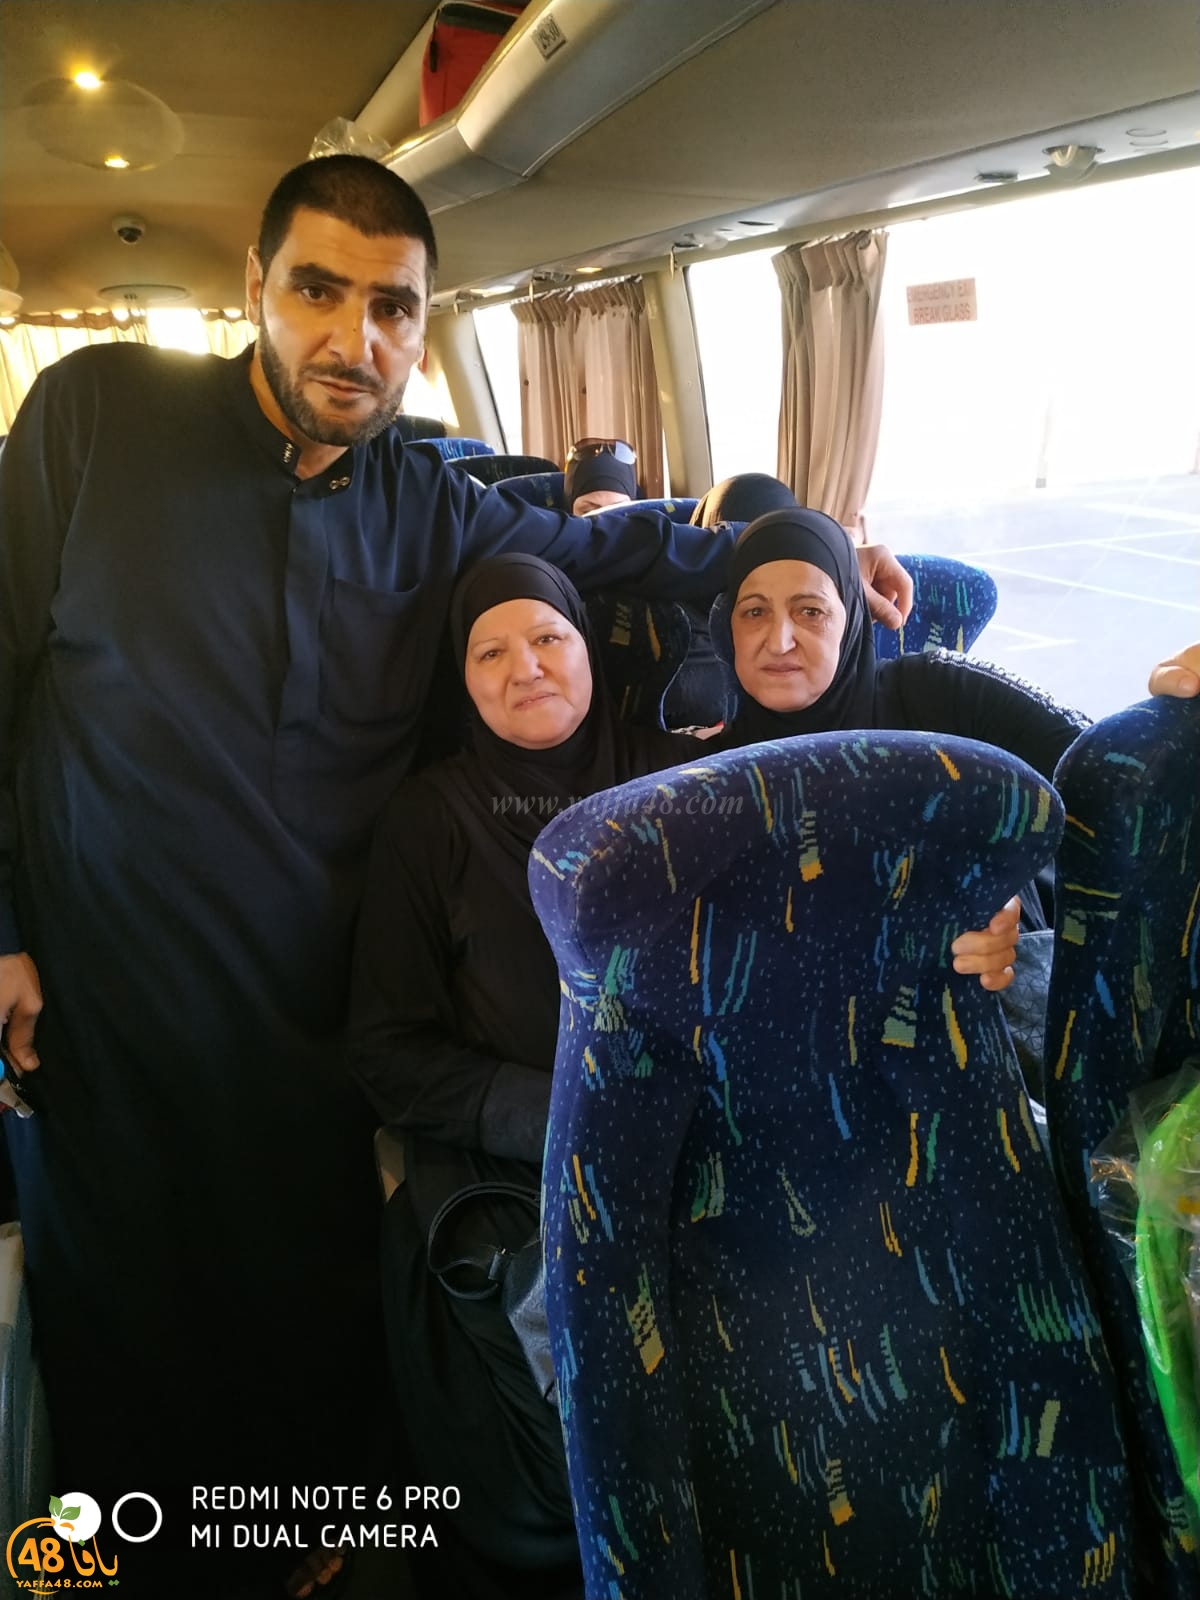  بالصور: انطلاق حافلة الفوج الثاني من حجاج مدينة يافا الى الديار الحجازية 